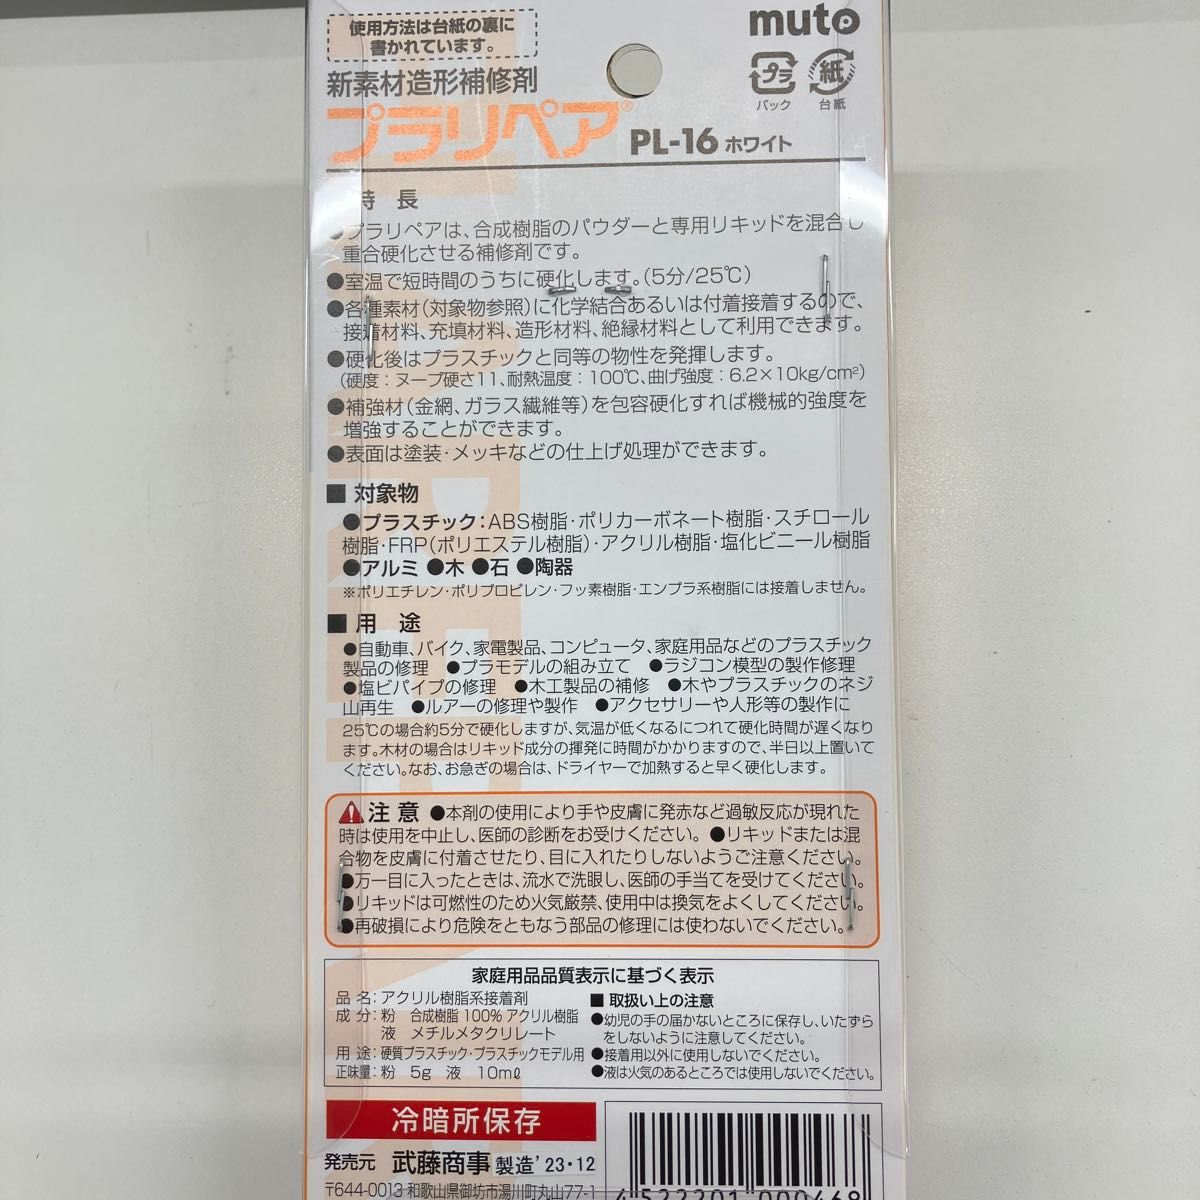 MUTOSYOUJI 武藤商事 プラリペア 【ホワイト】 品番 PL16W HTRC3 新品未使用